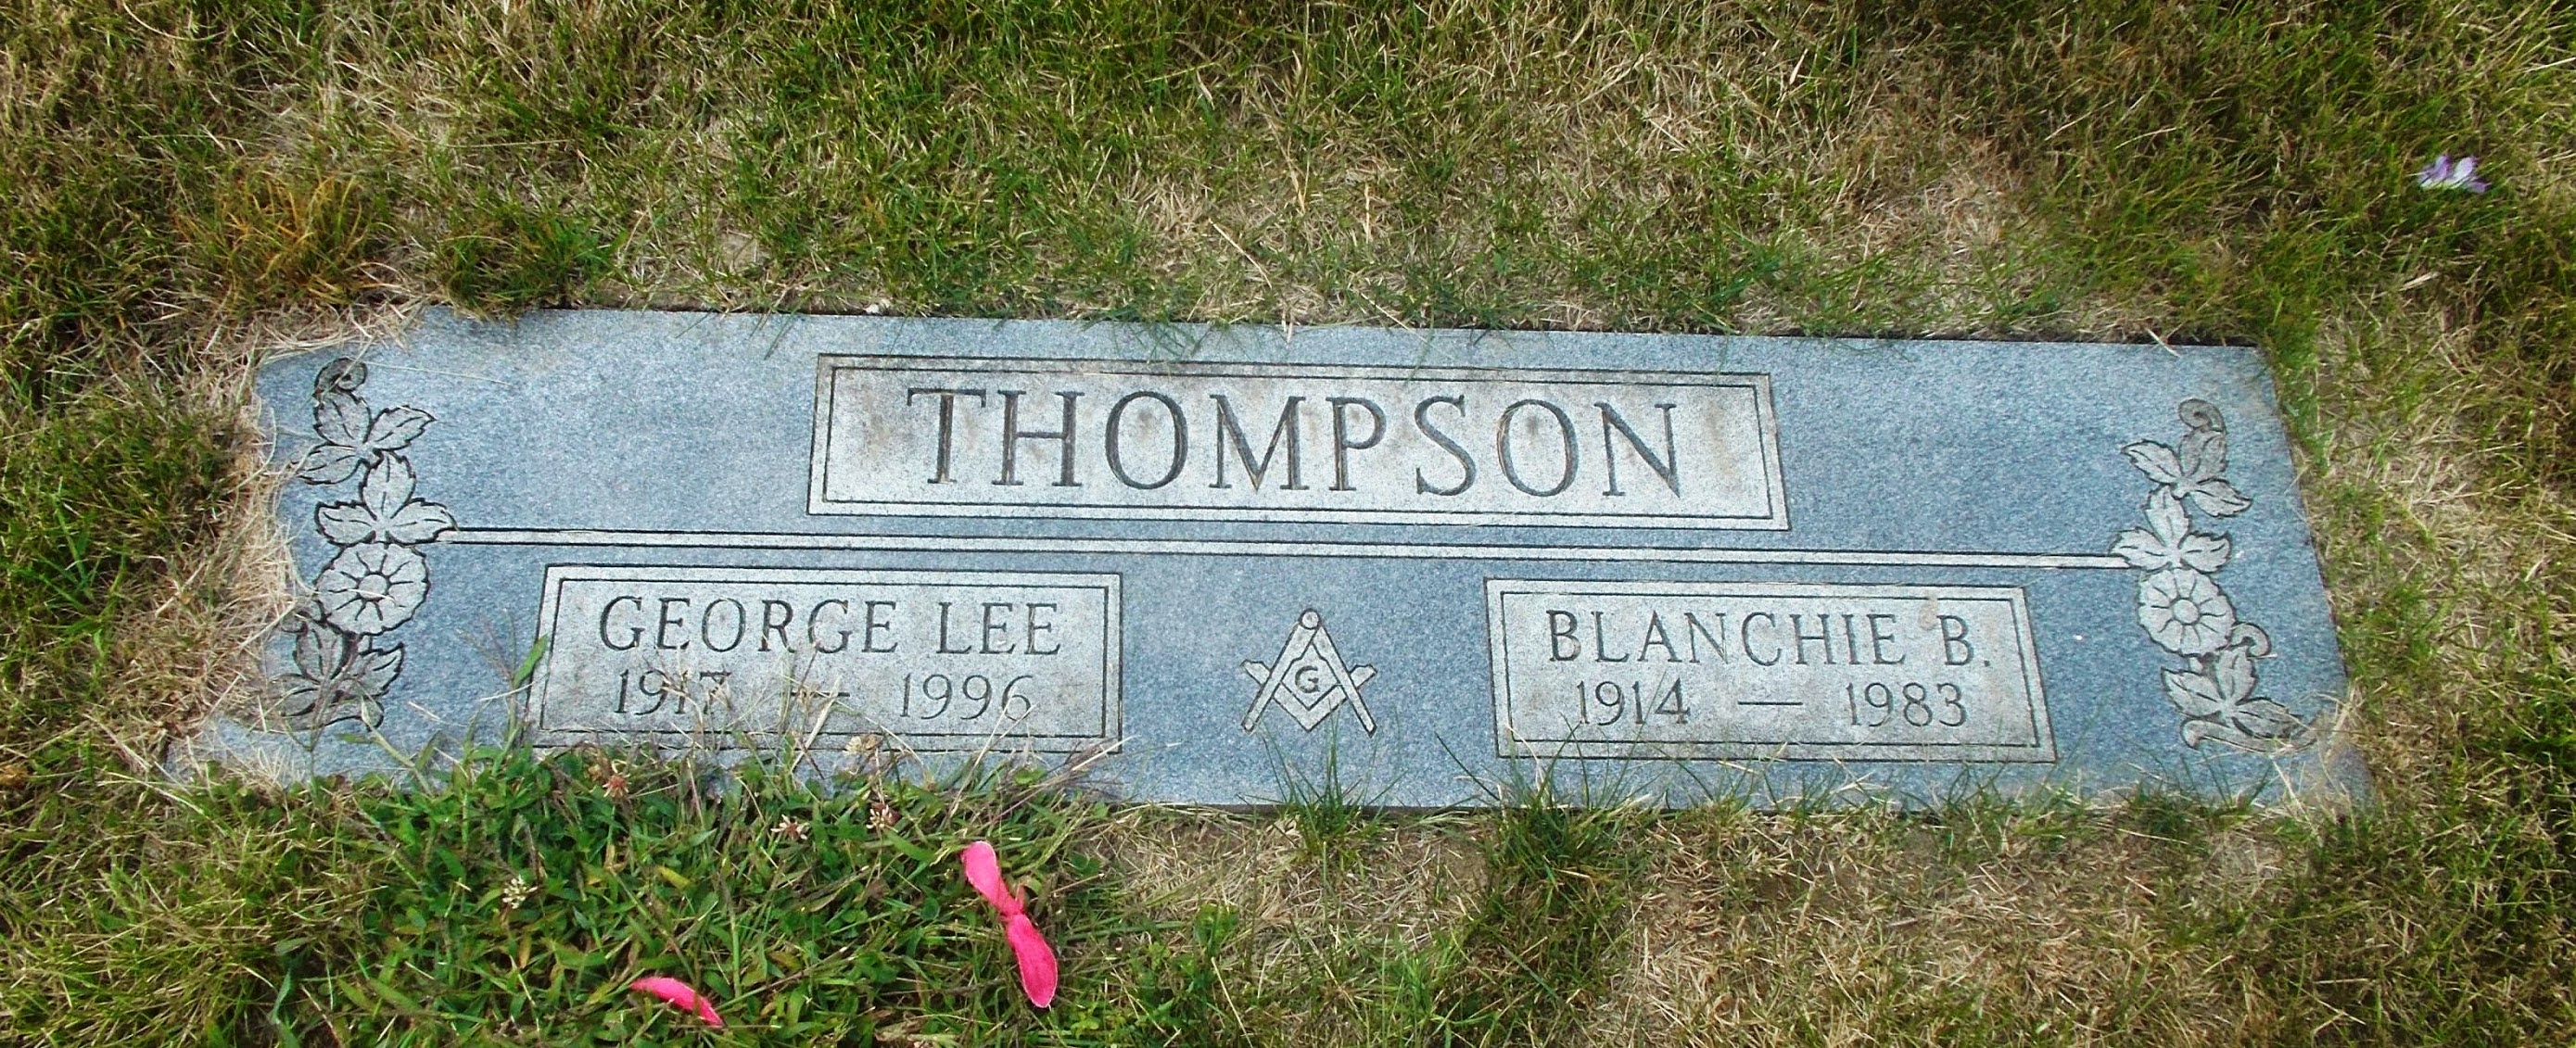 George Lee Thompson